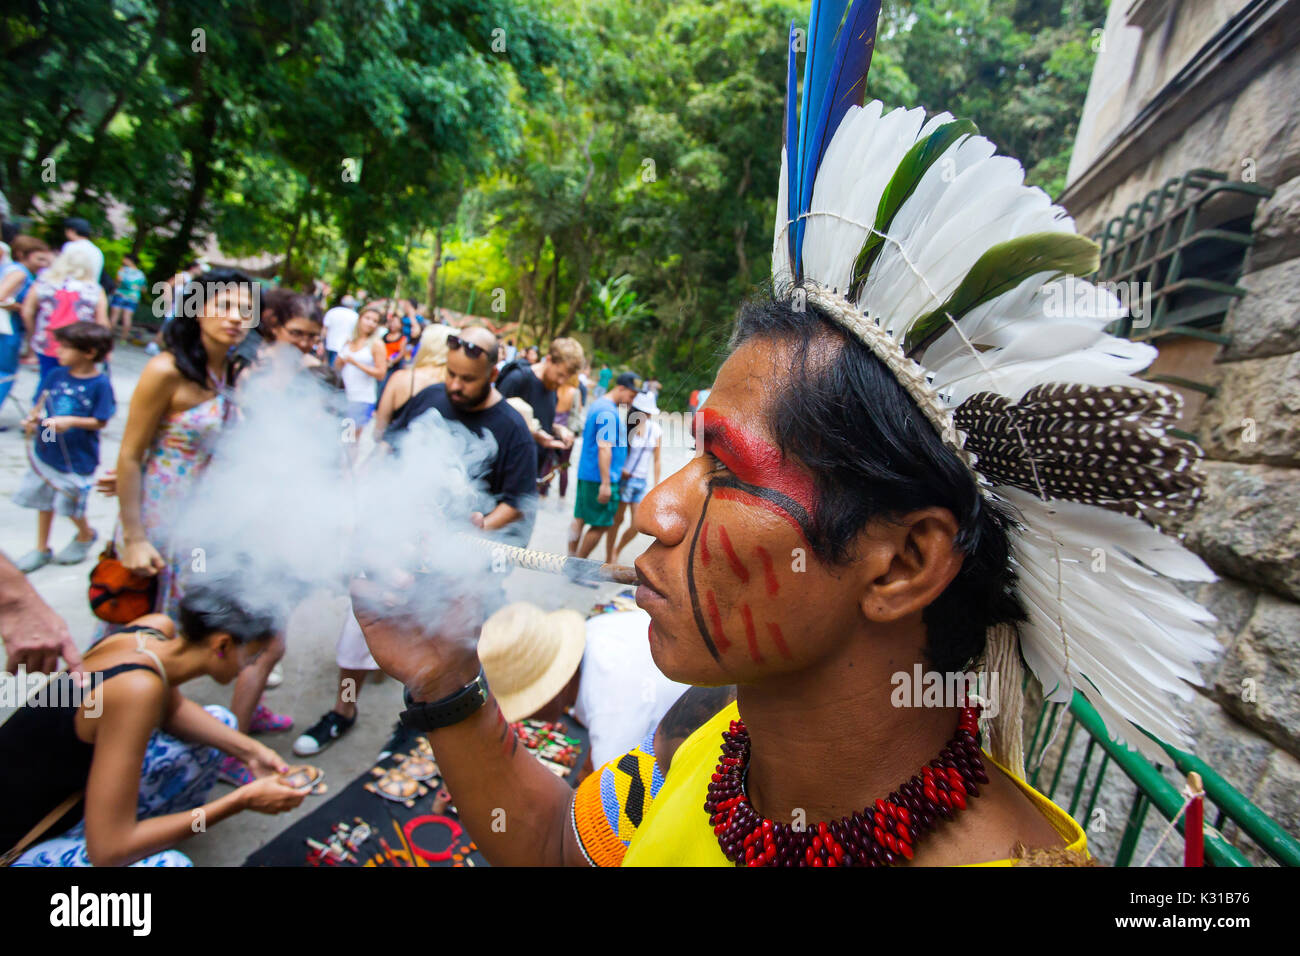 Brasiliano tradizionale indiano con faccia dipinta fumare la pipa al Parque Laje nel comemoration dell'indiano del giorno, Rio de Janeiro, Brasile Foto Stock